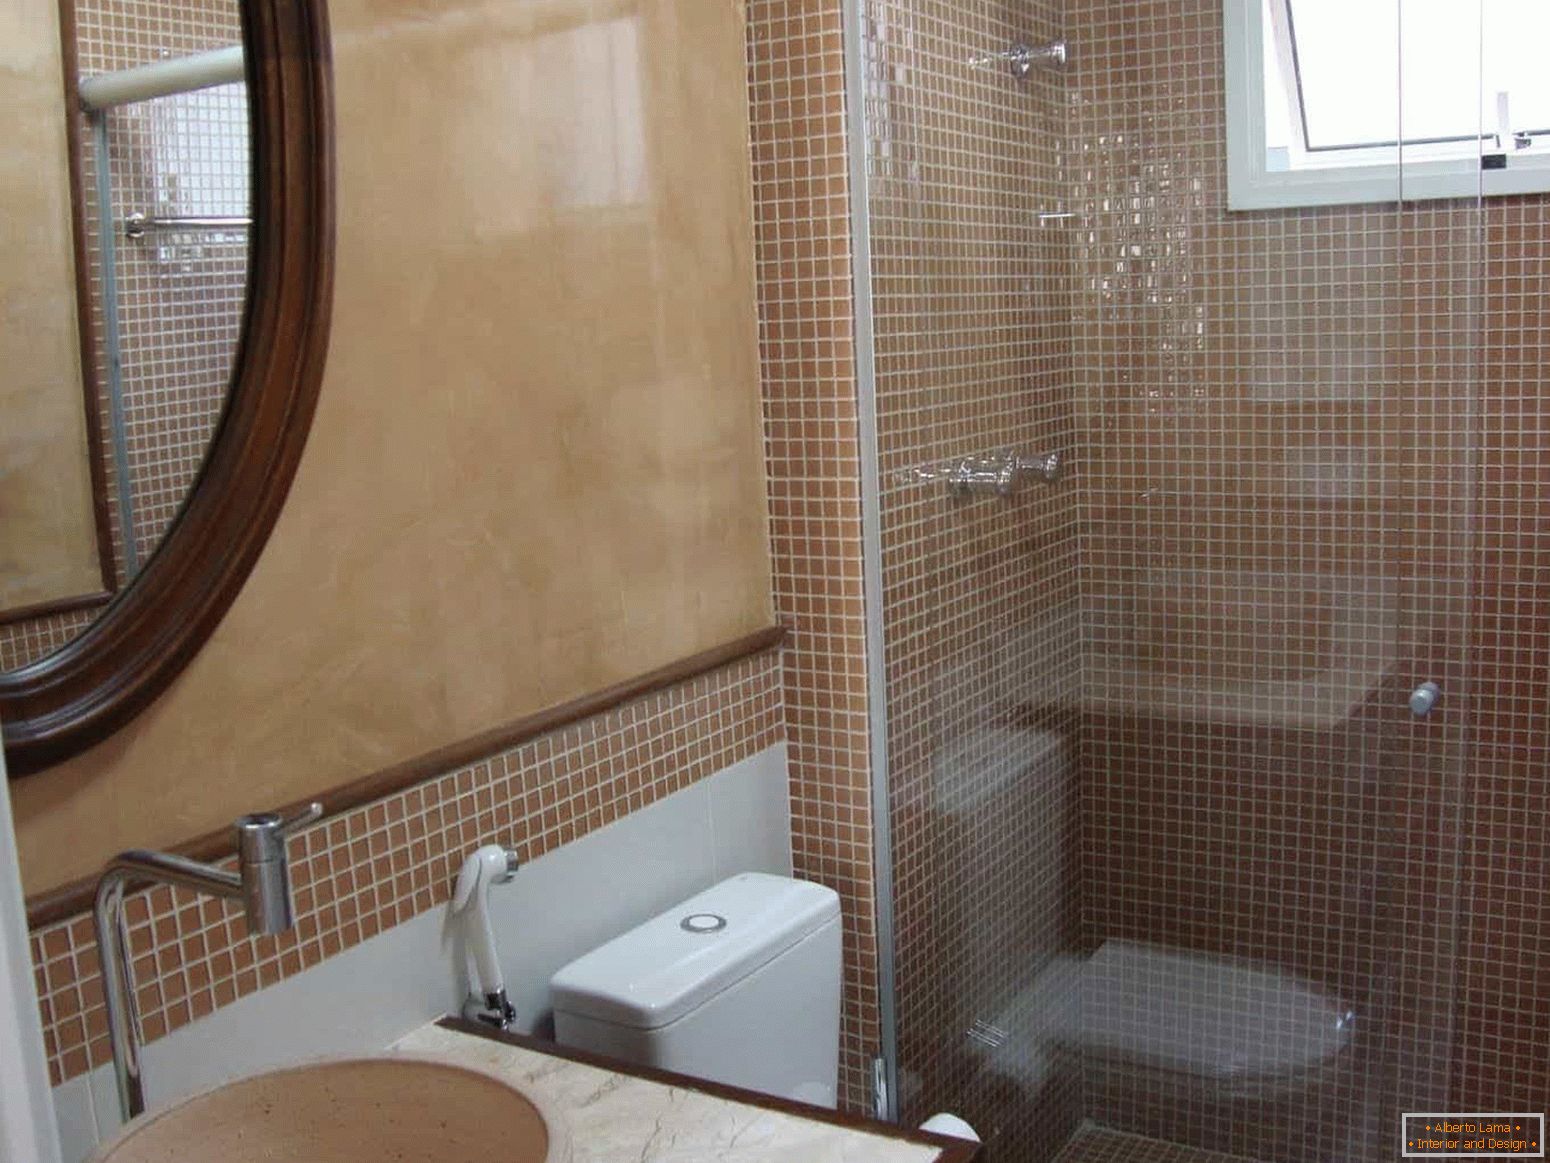 Mozaik je popularan u završetku kupatila u kućištu